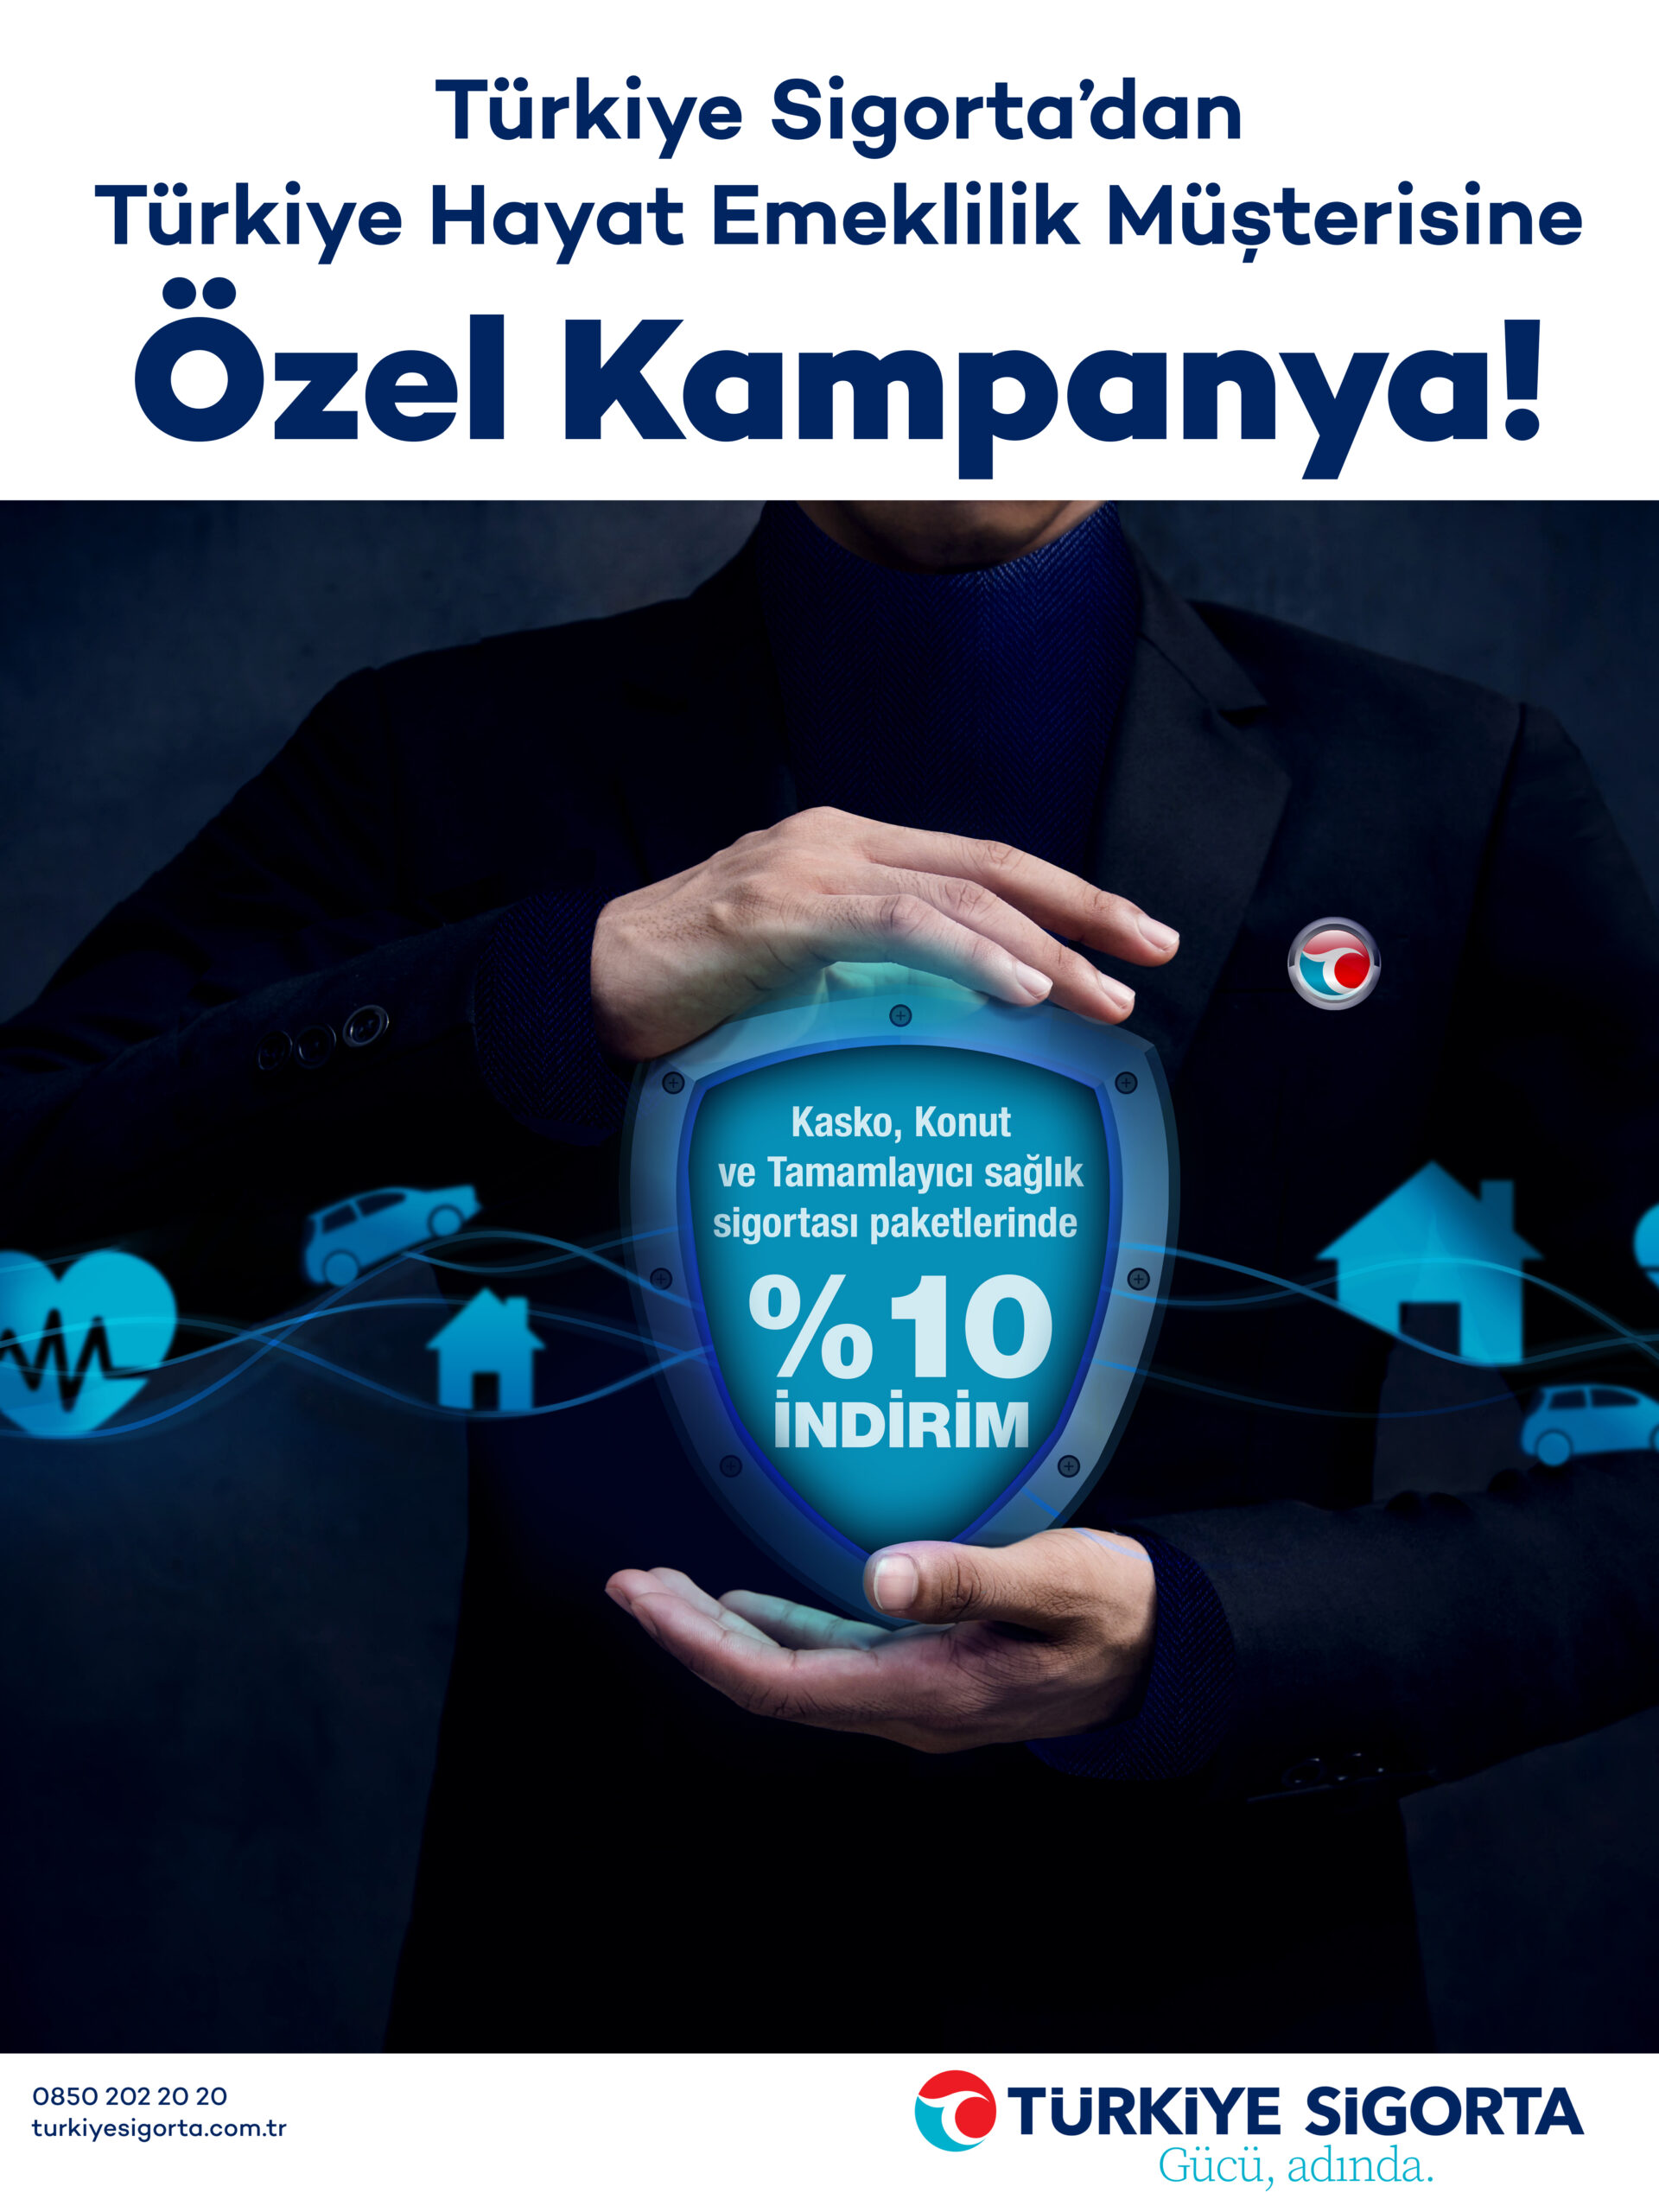 Türkiye Sigorta’dan Türkiye Hayat Emeklilik müşterilerine özel kampanya